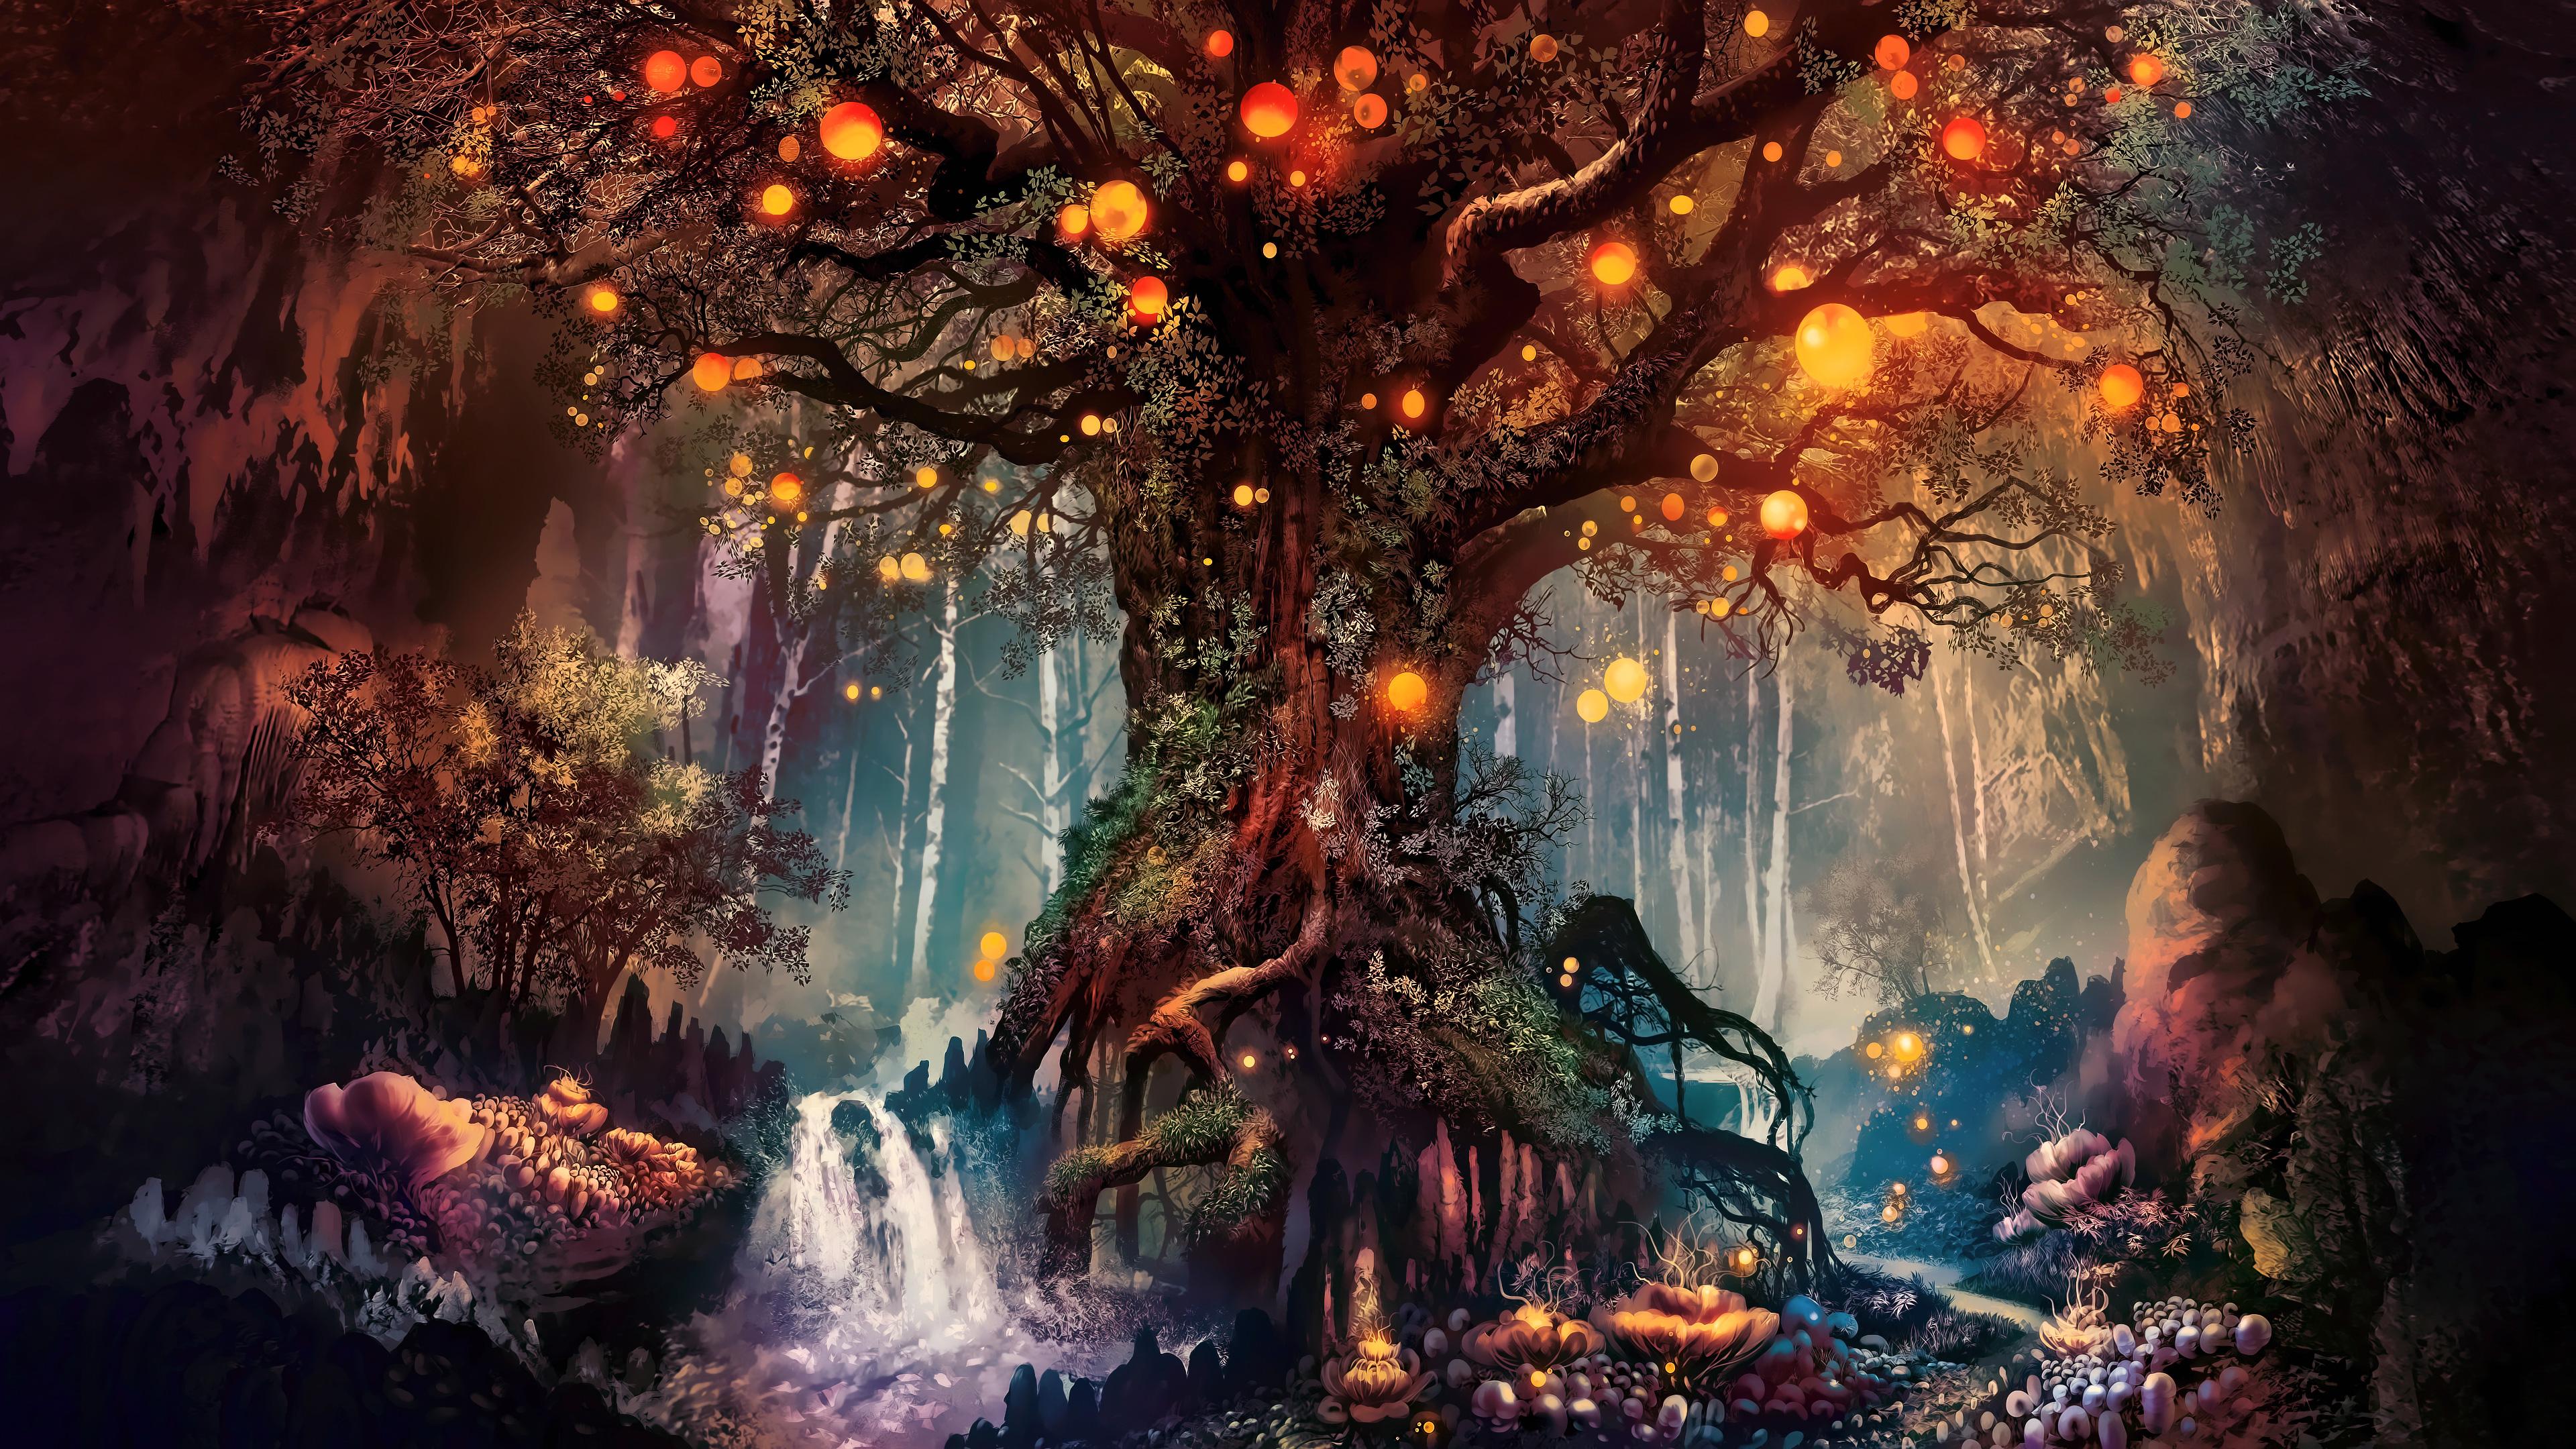 3840 x 2160 · jpeg - Forest Fantasy Artwork 4k, HD Artist, 4k Wallpapers, Images ...